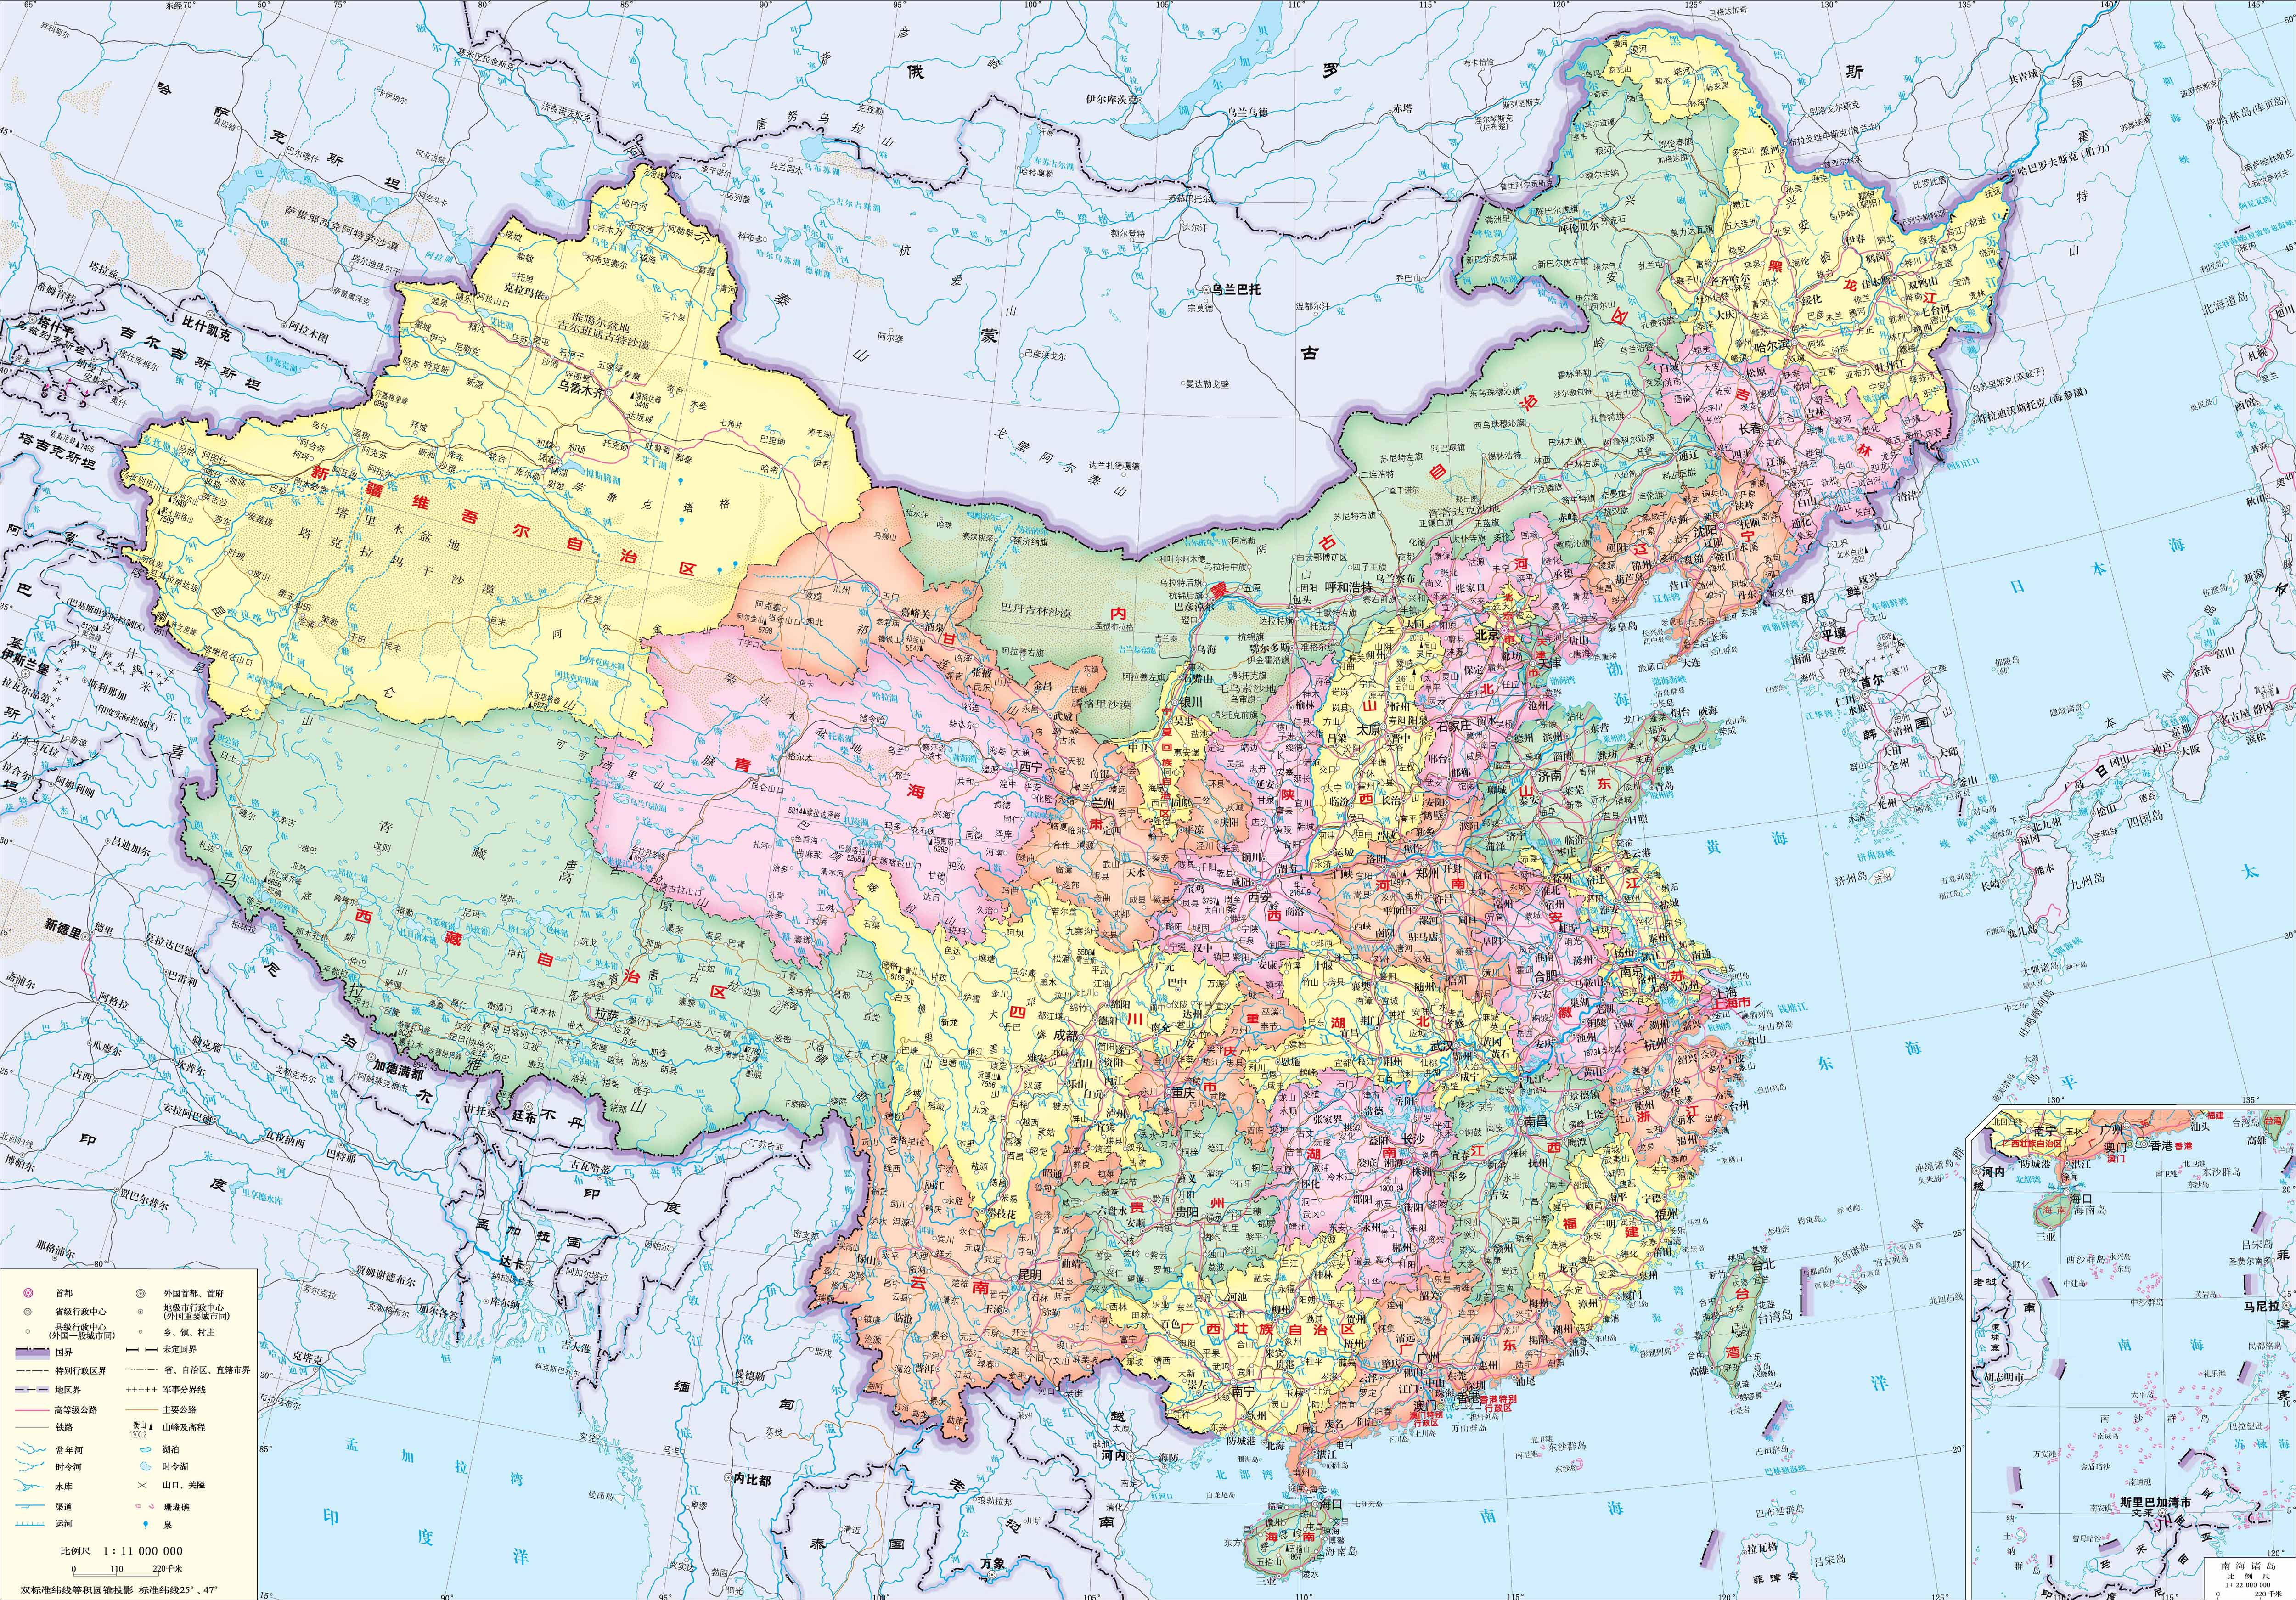 中国地图全图高清版 - 中国地图高清版大图 - 中国各省市地图全图